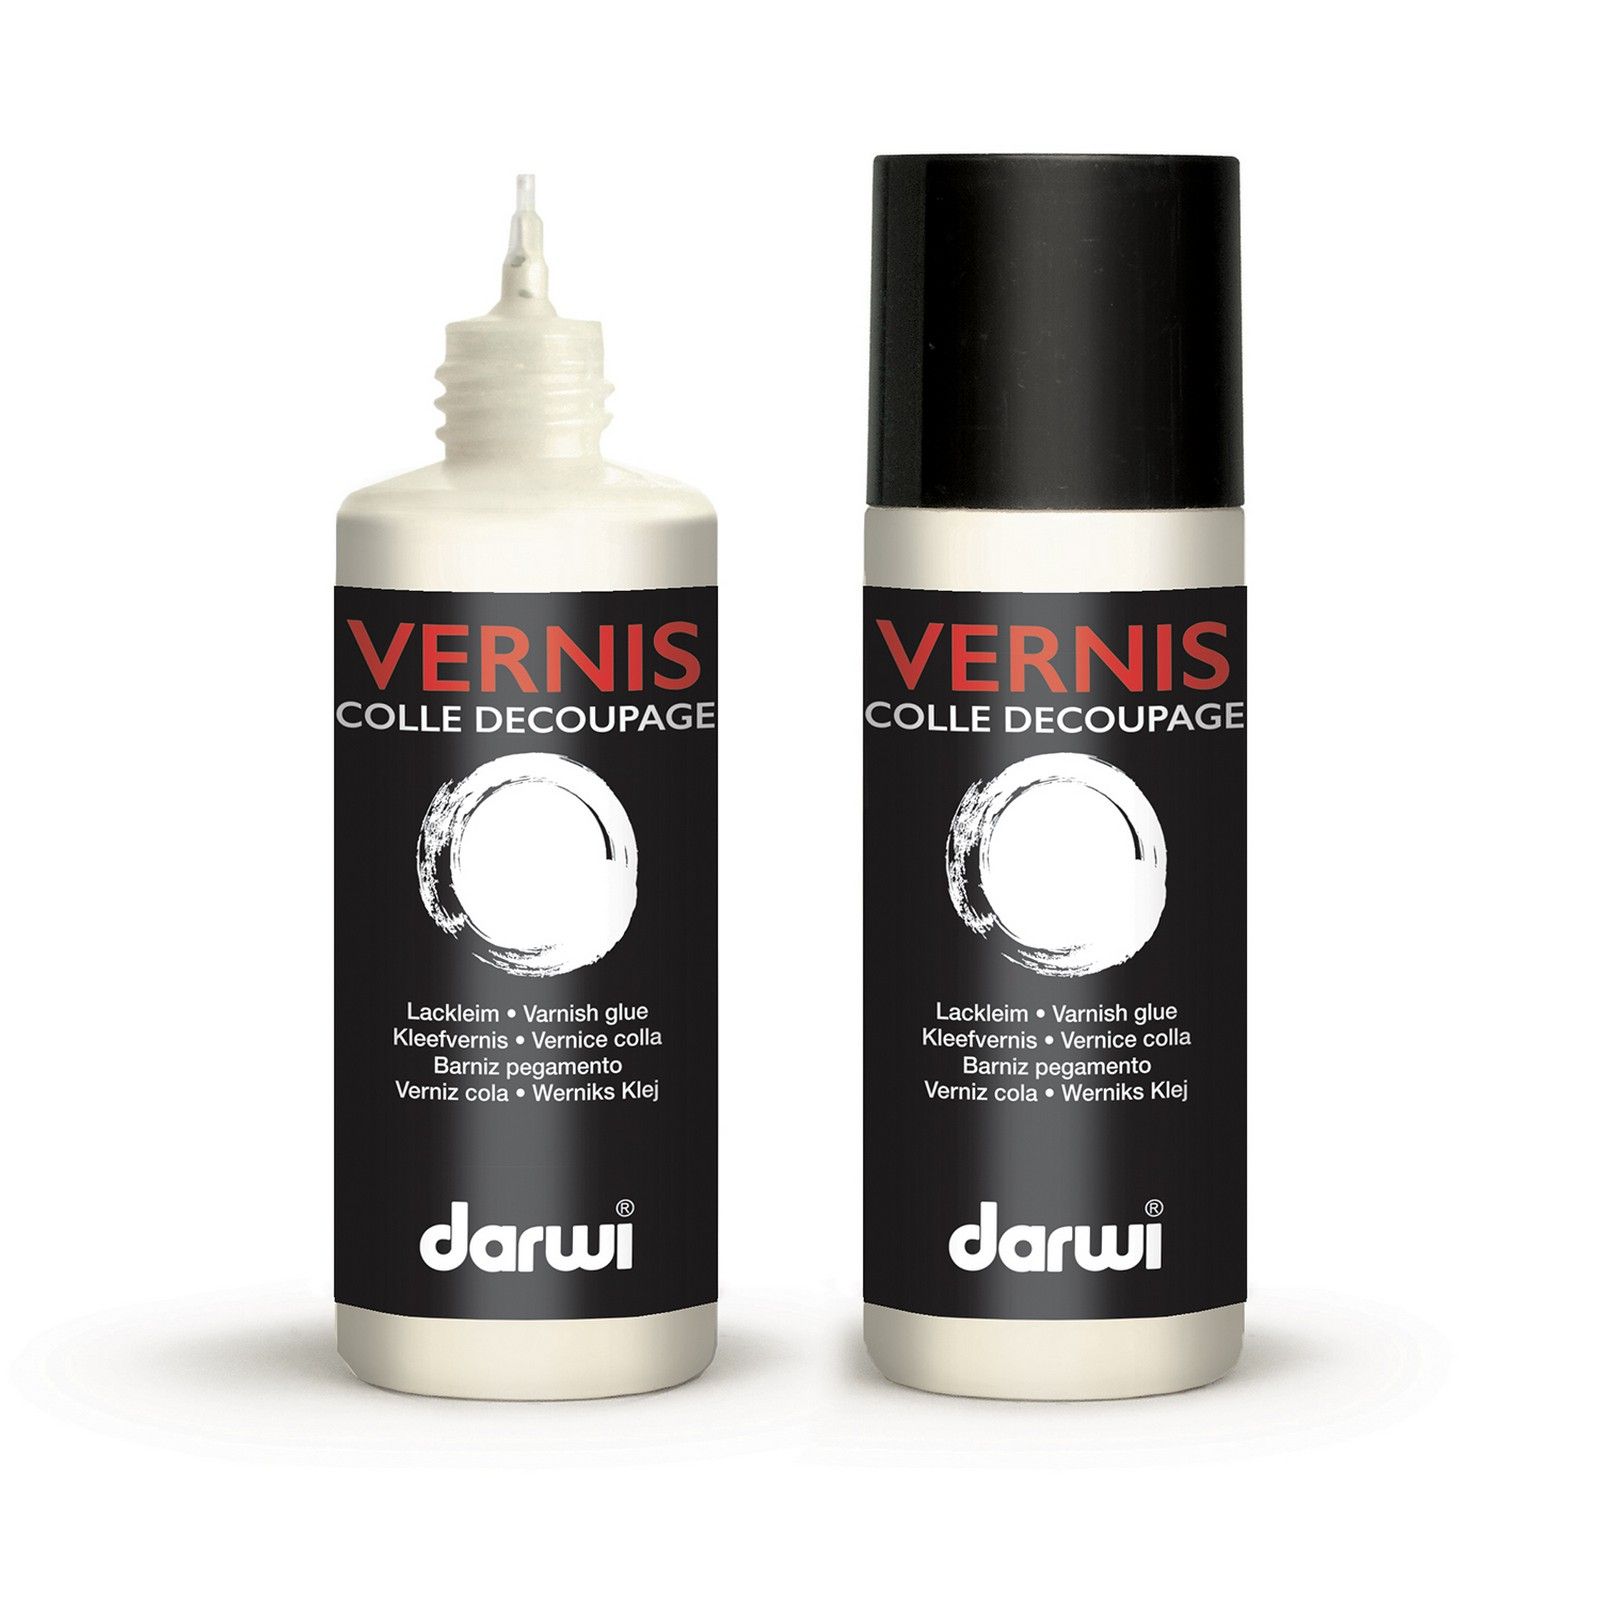 Darwi • Varnish glue 80ml